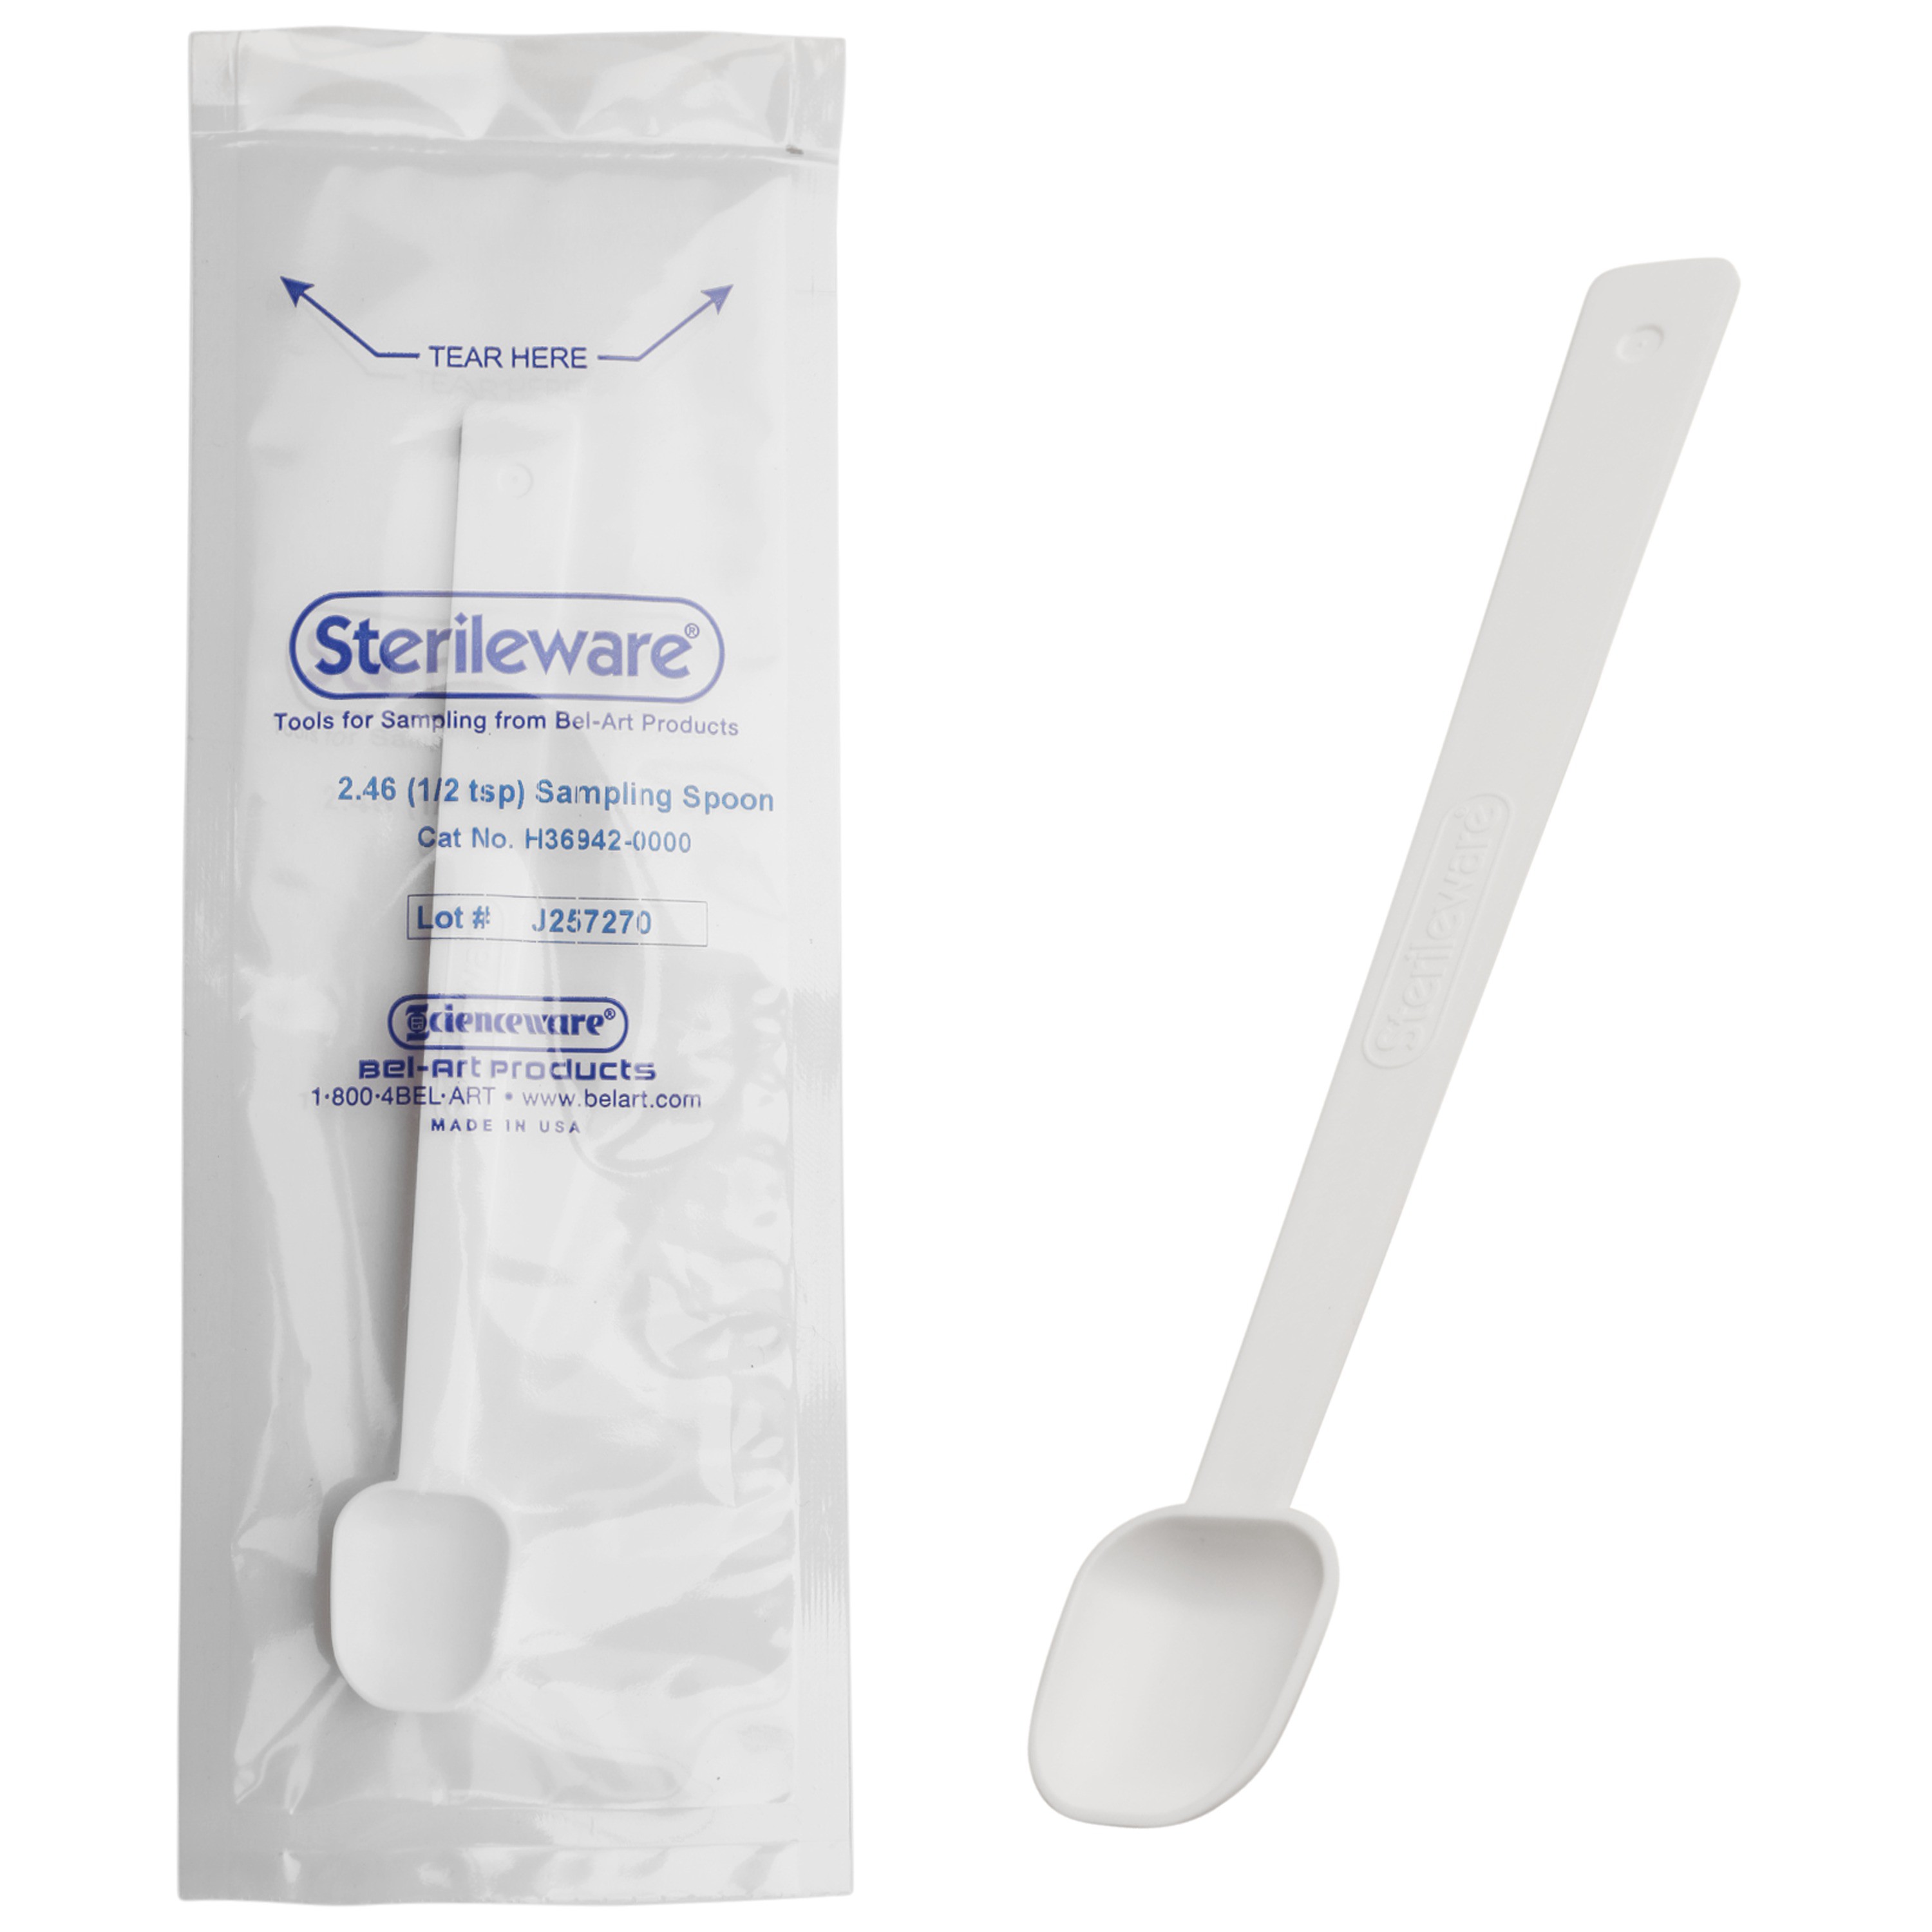 Bel-Art Sterileware Long Handle Sterile Sampling Spoon; 2 